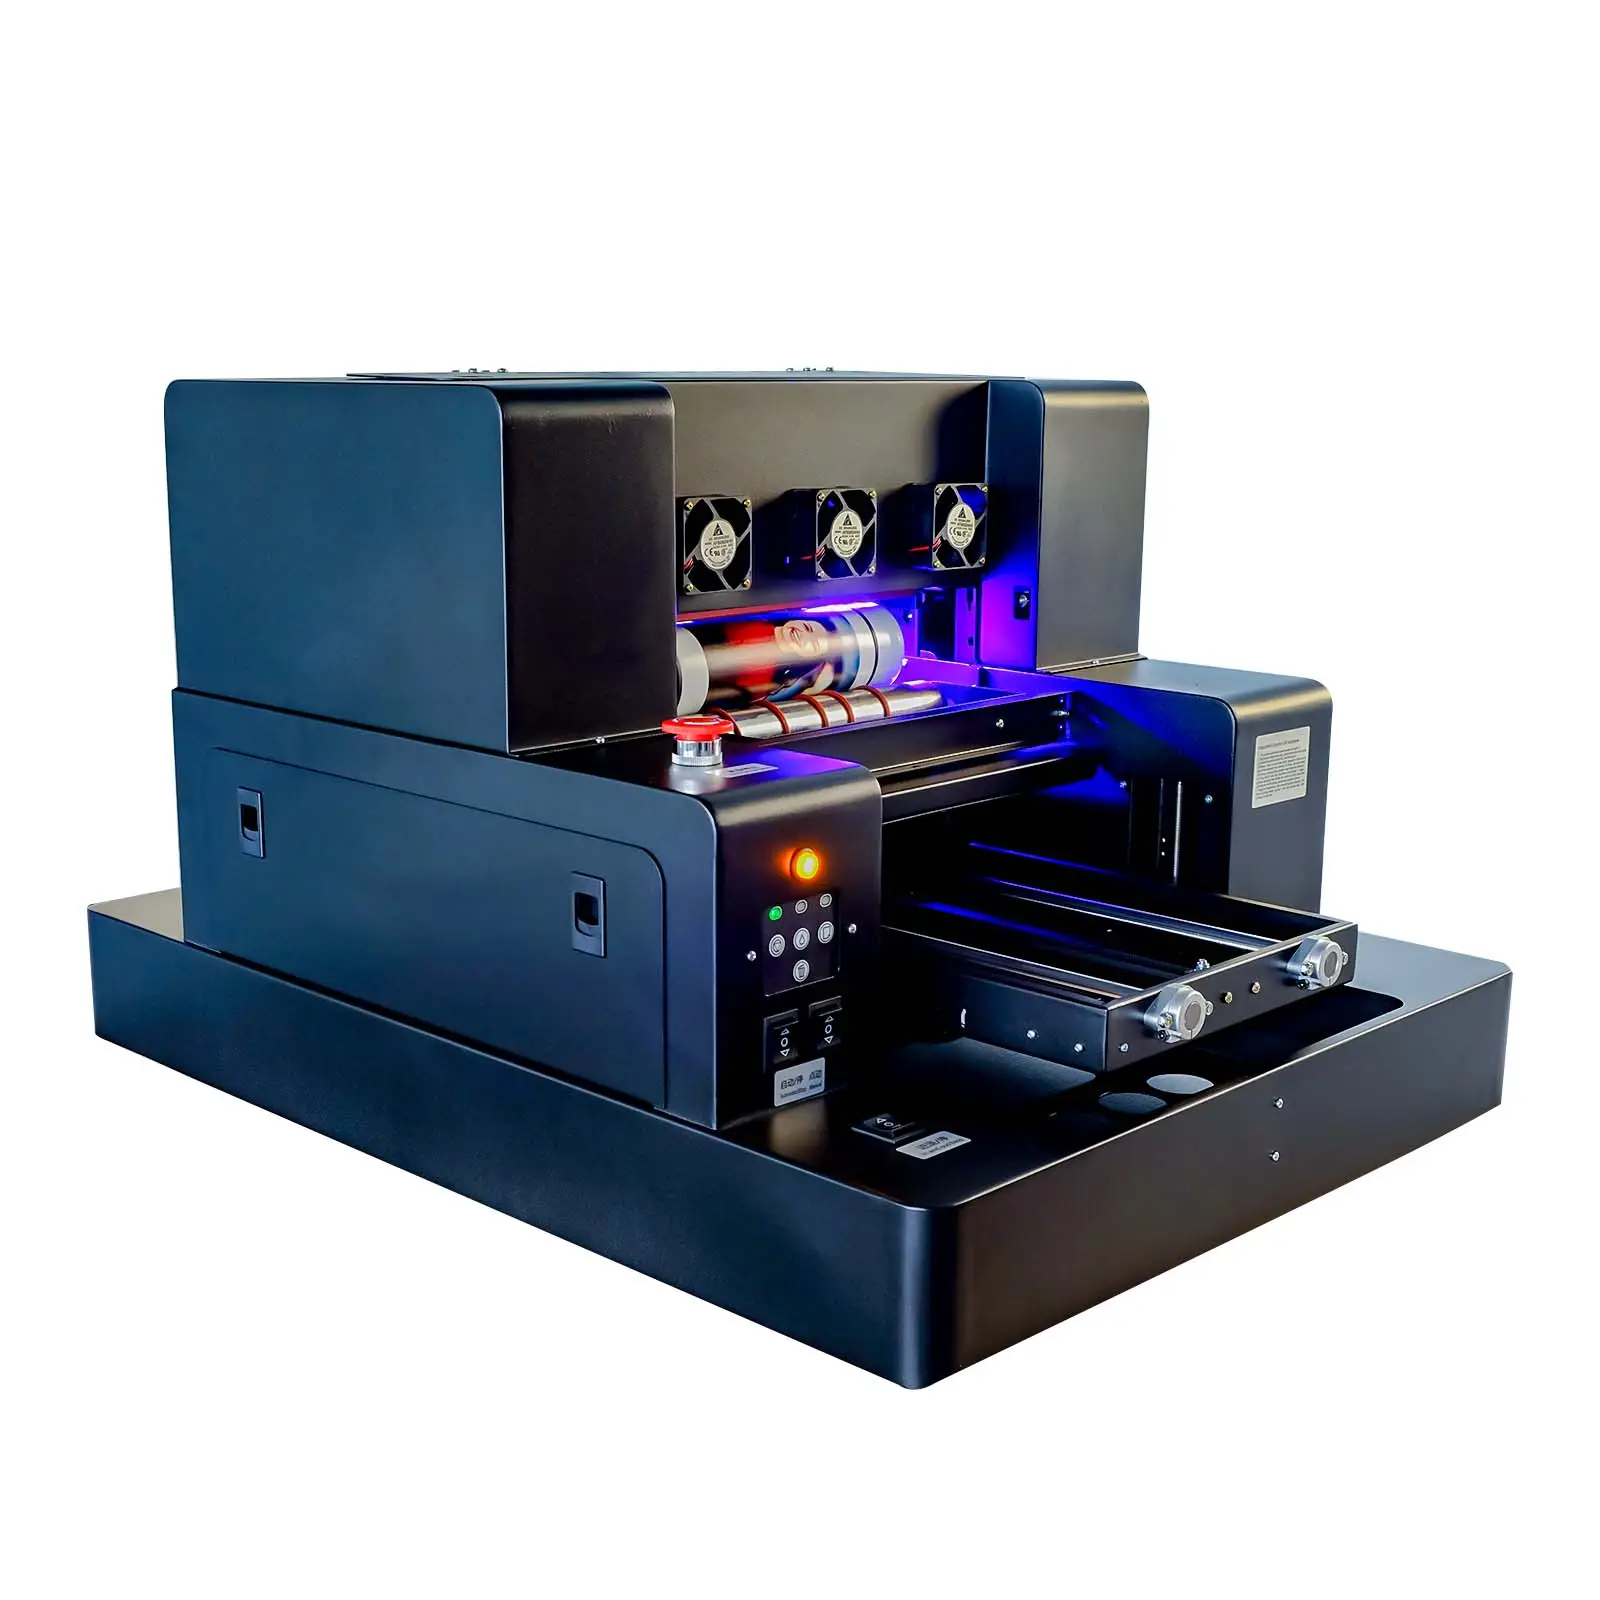 रोल टू रोल यूवी प्रिंटर ए3-एल805 फ्लैटबेड स्वचालित प्रिंटर यूवी प्रिंटिंग मशीन यूवी प्रिंटर ए3